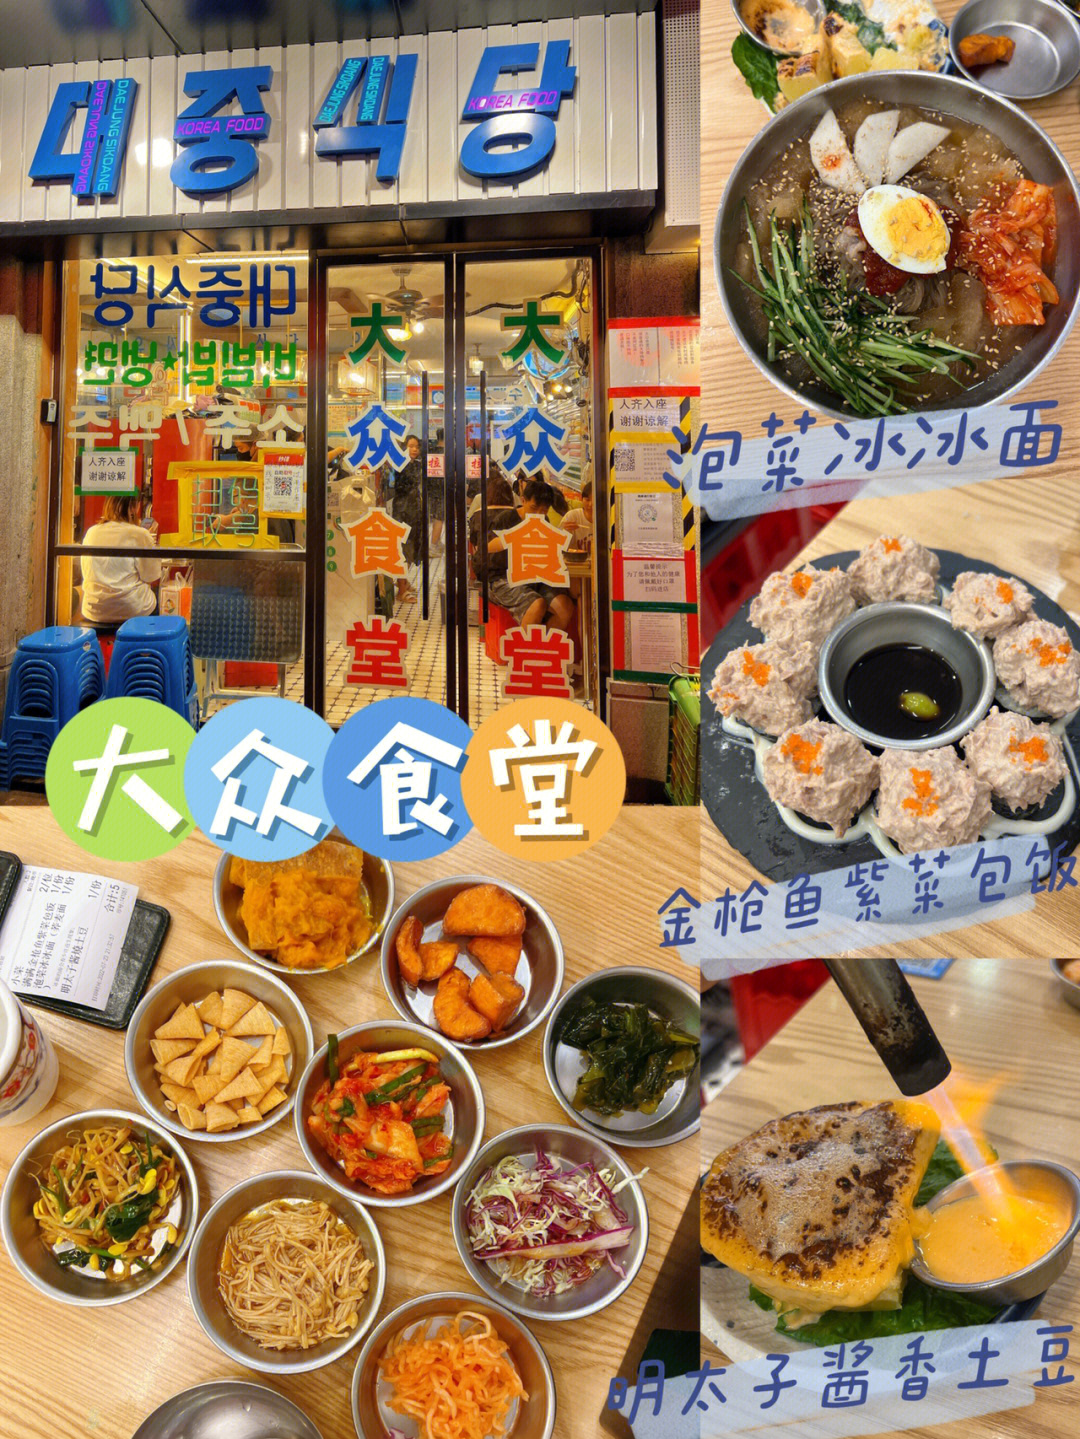 广州北京路超平价韩国料理店大众食堂